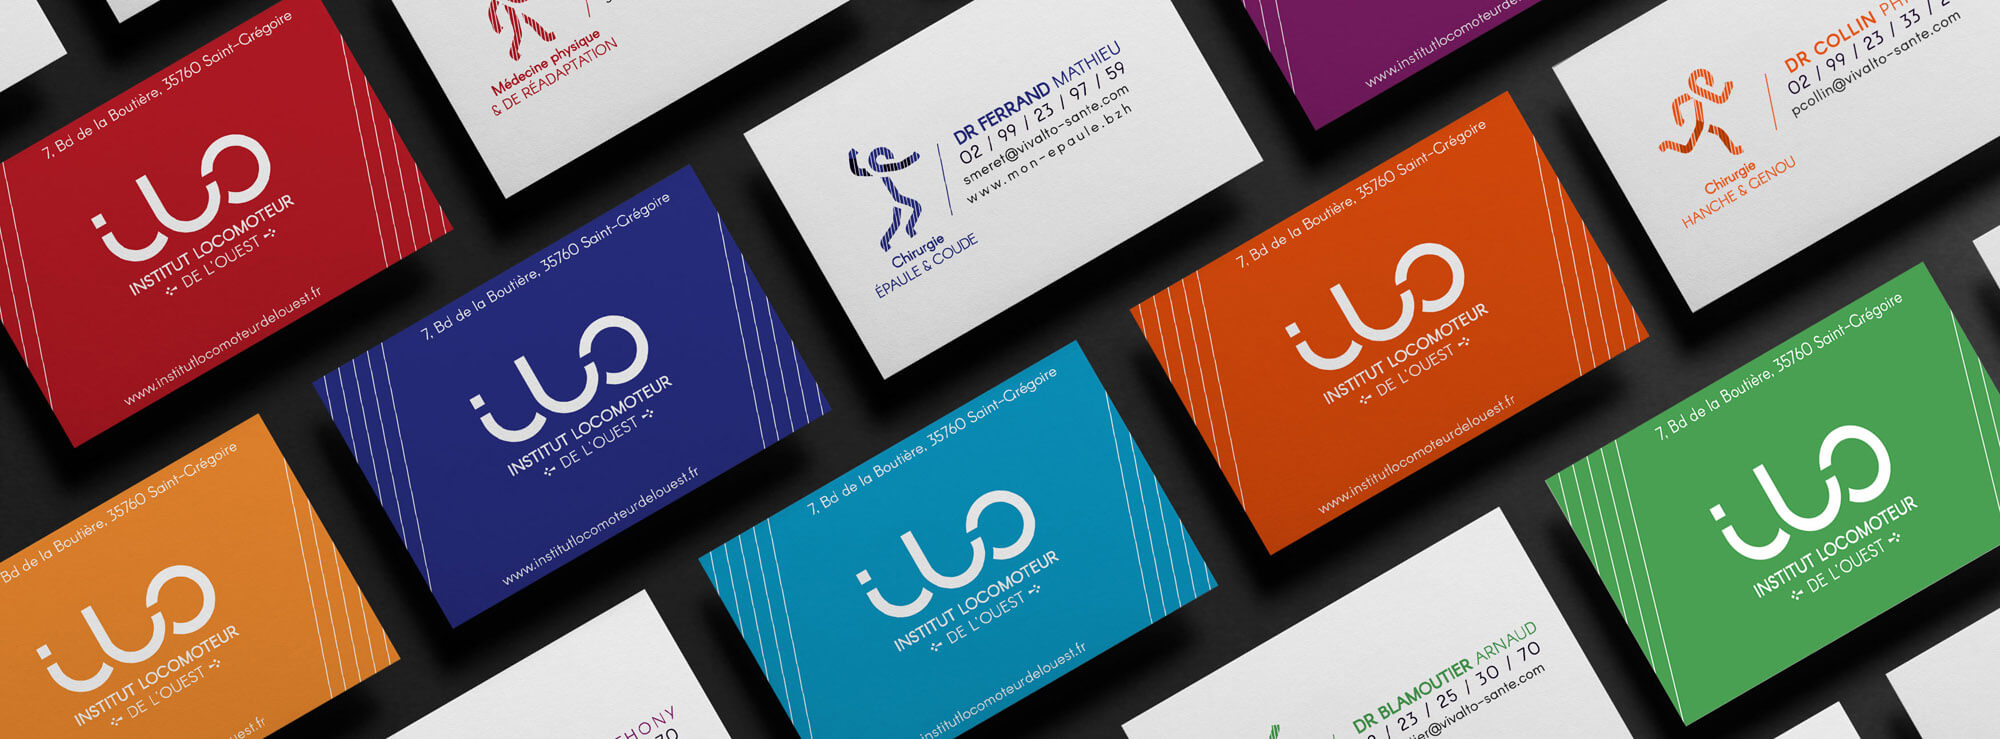 ILO - a graphic identity full of flexibility